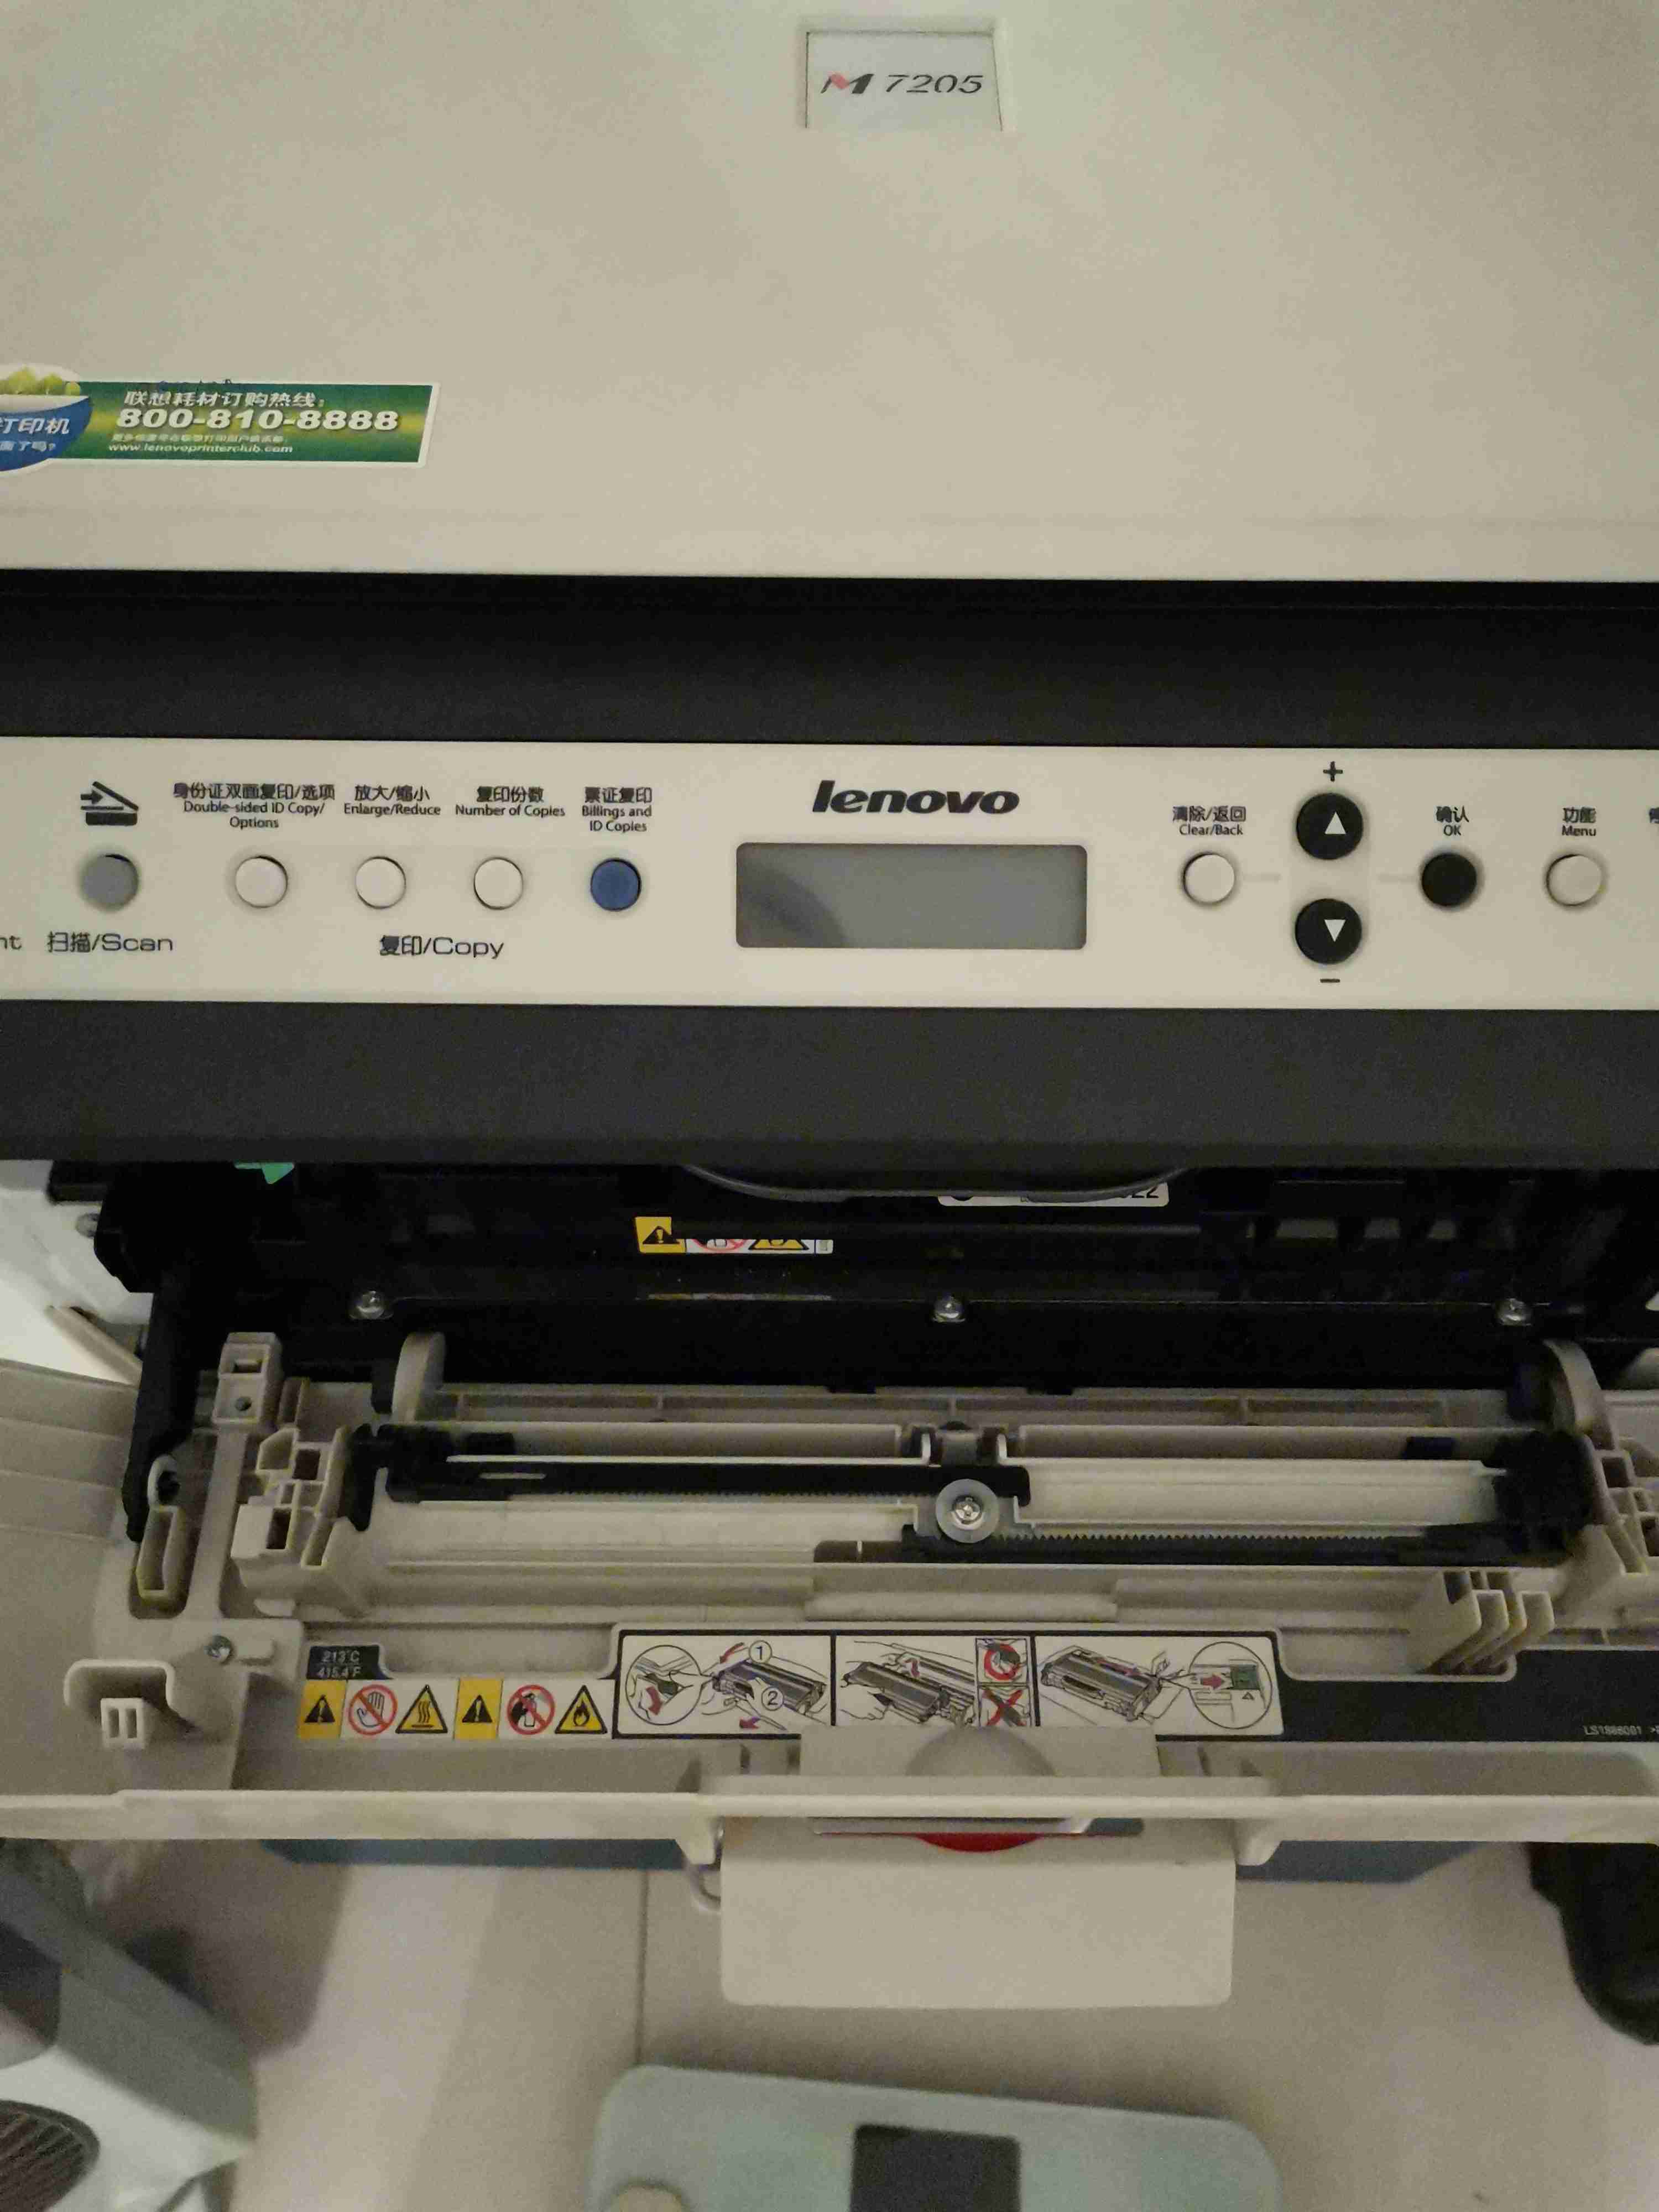 联想M7205的打印机怎么把墨盒拆下来?